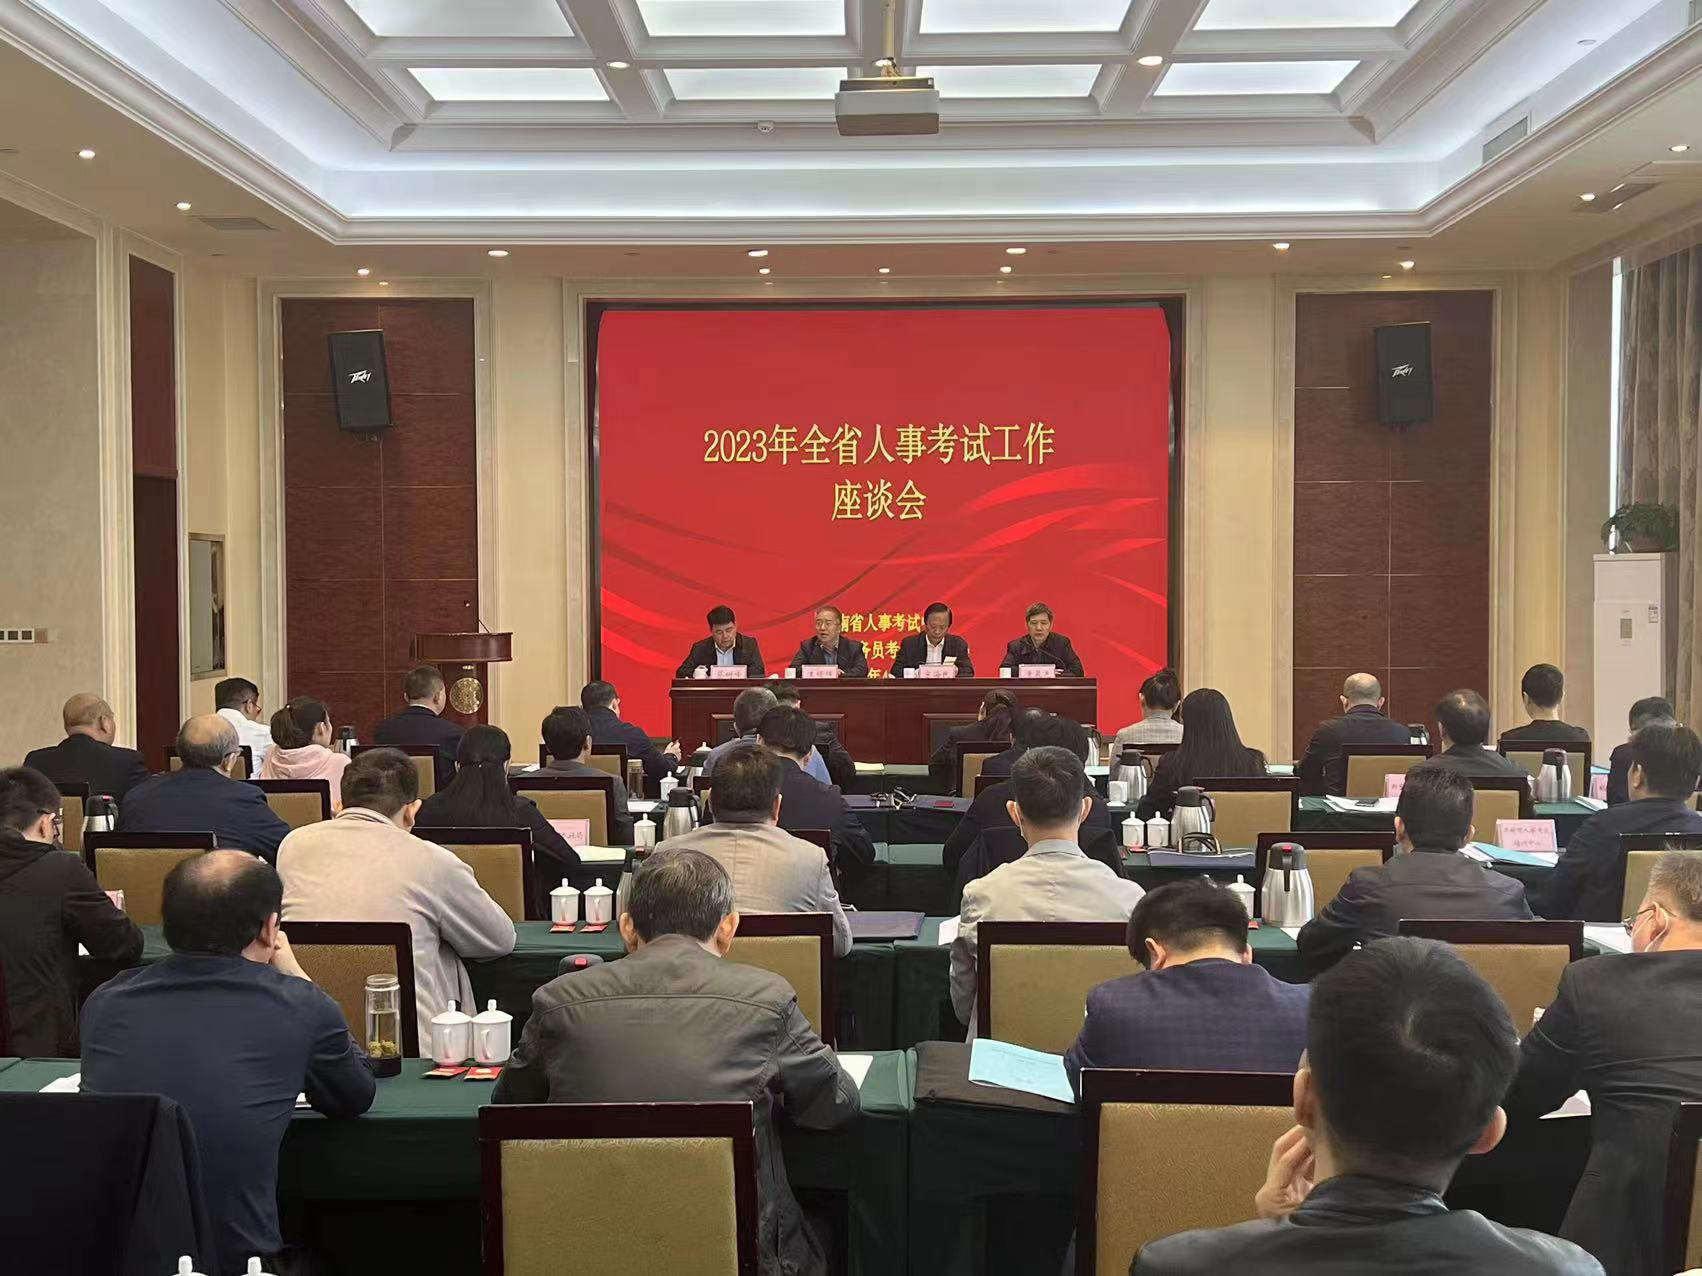 2023年全省人事考试工作座谈会在郑州召开